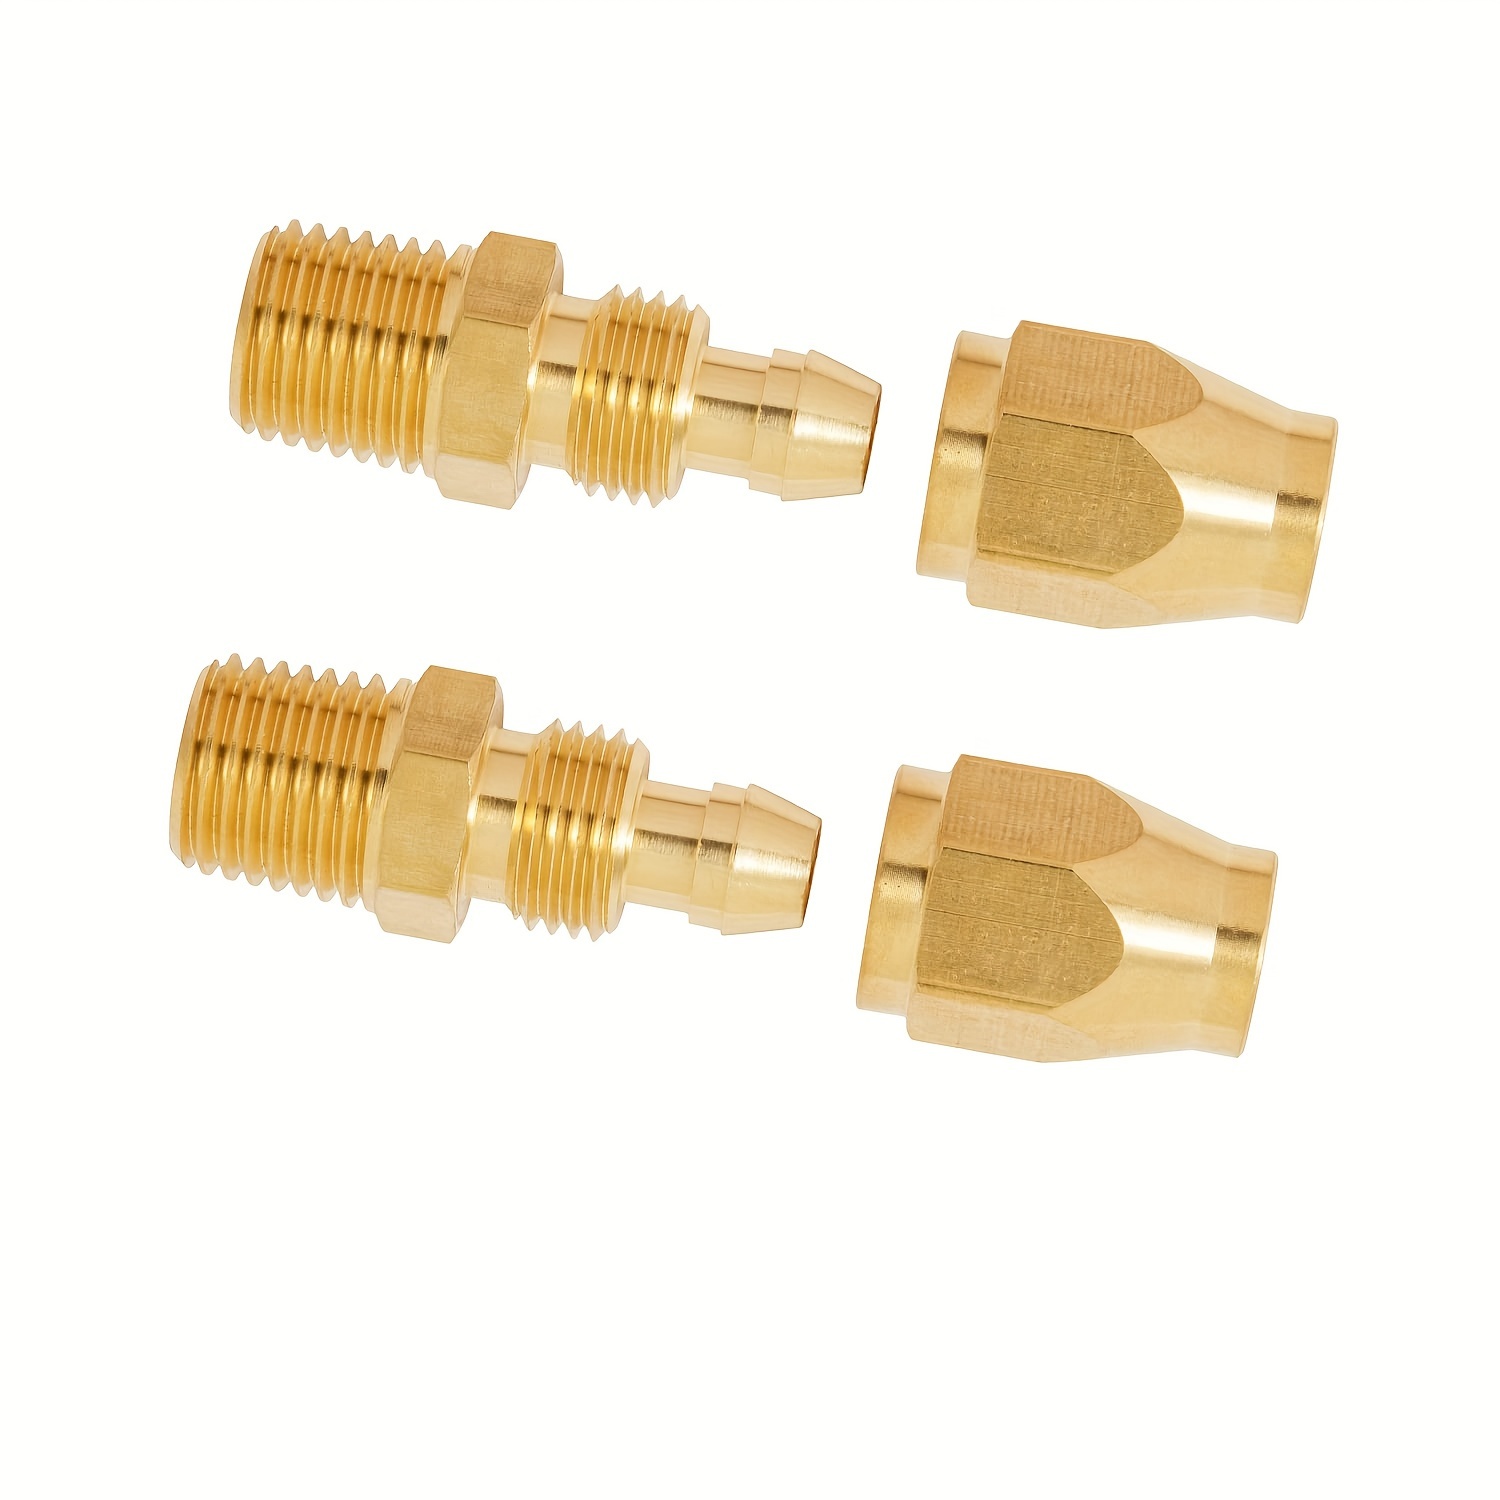 Pu Hose Repair Npt Connectors Premium Solid Brass Pneumatics